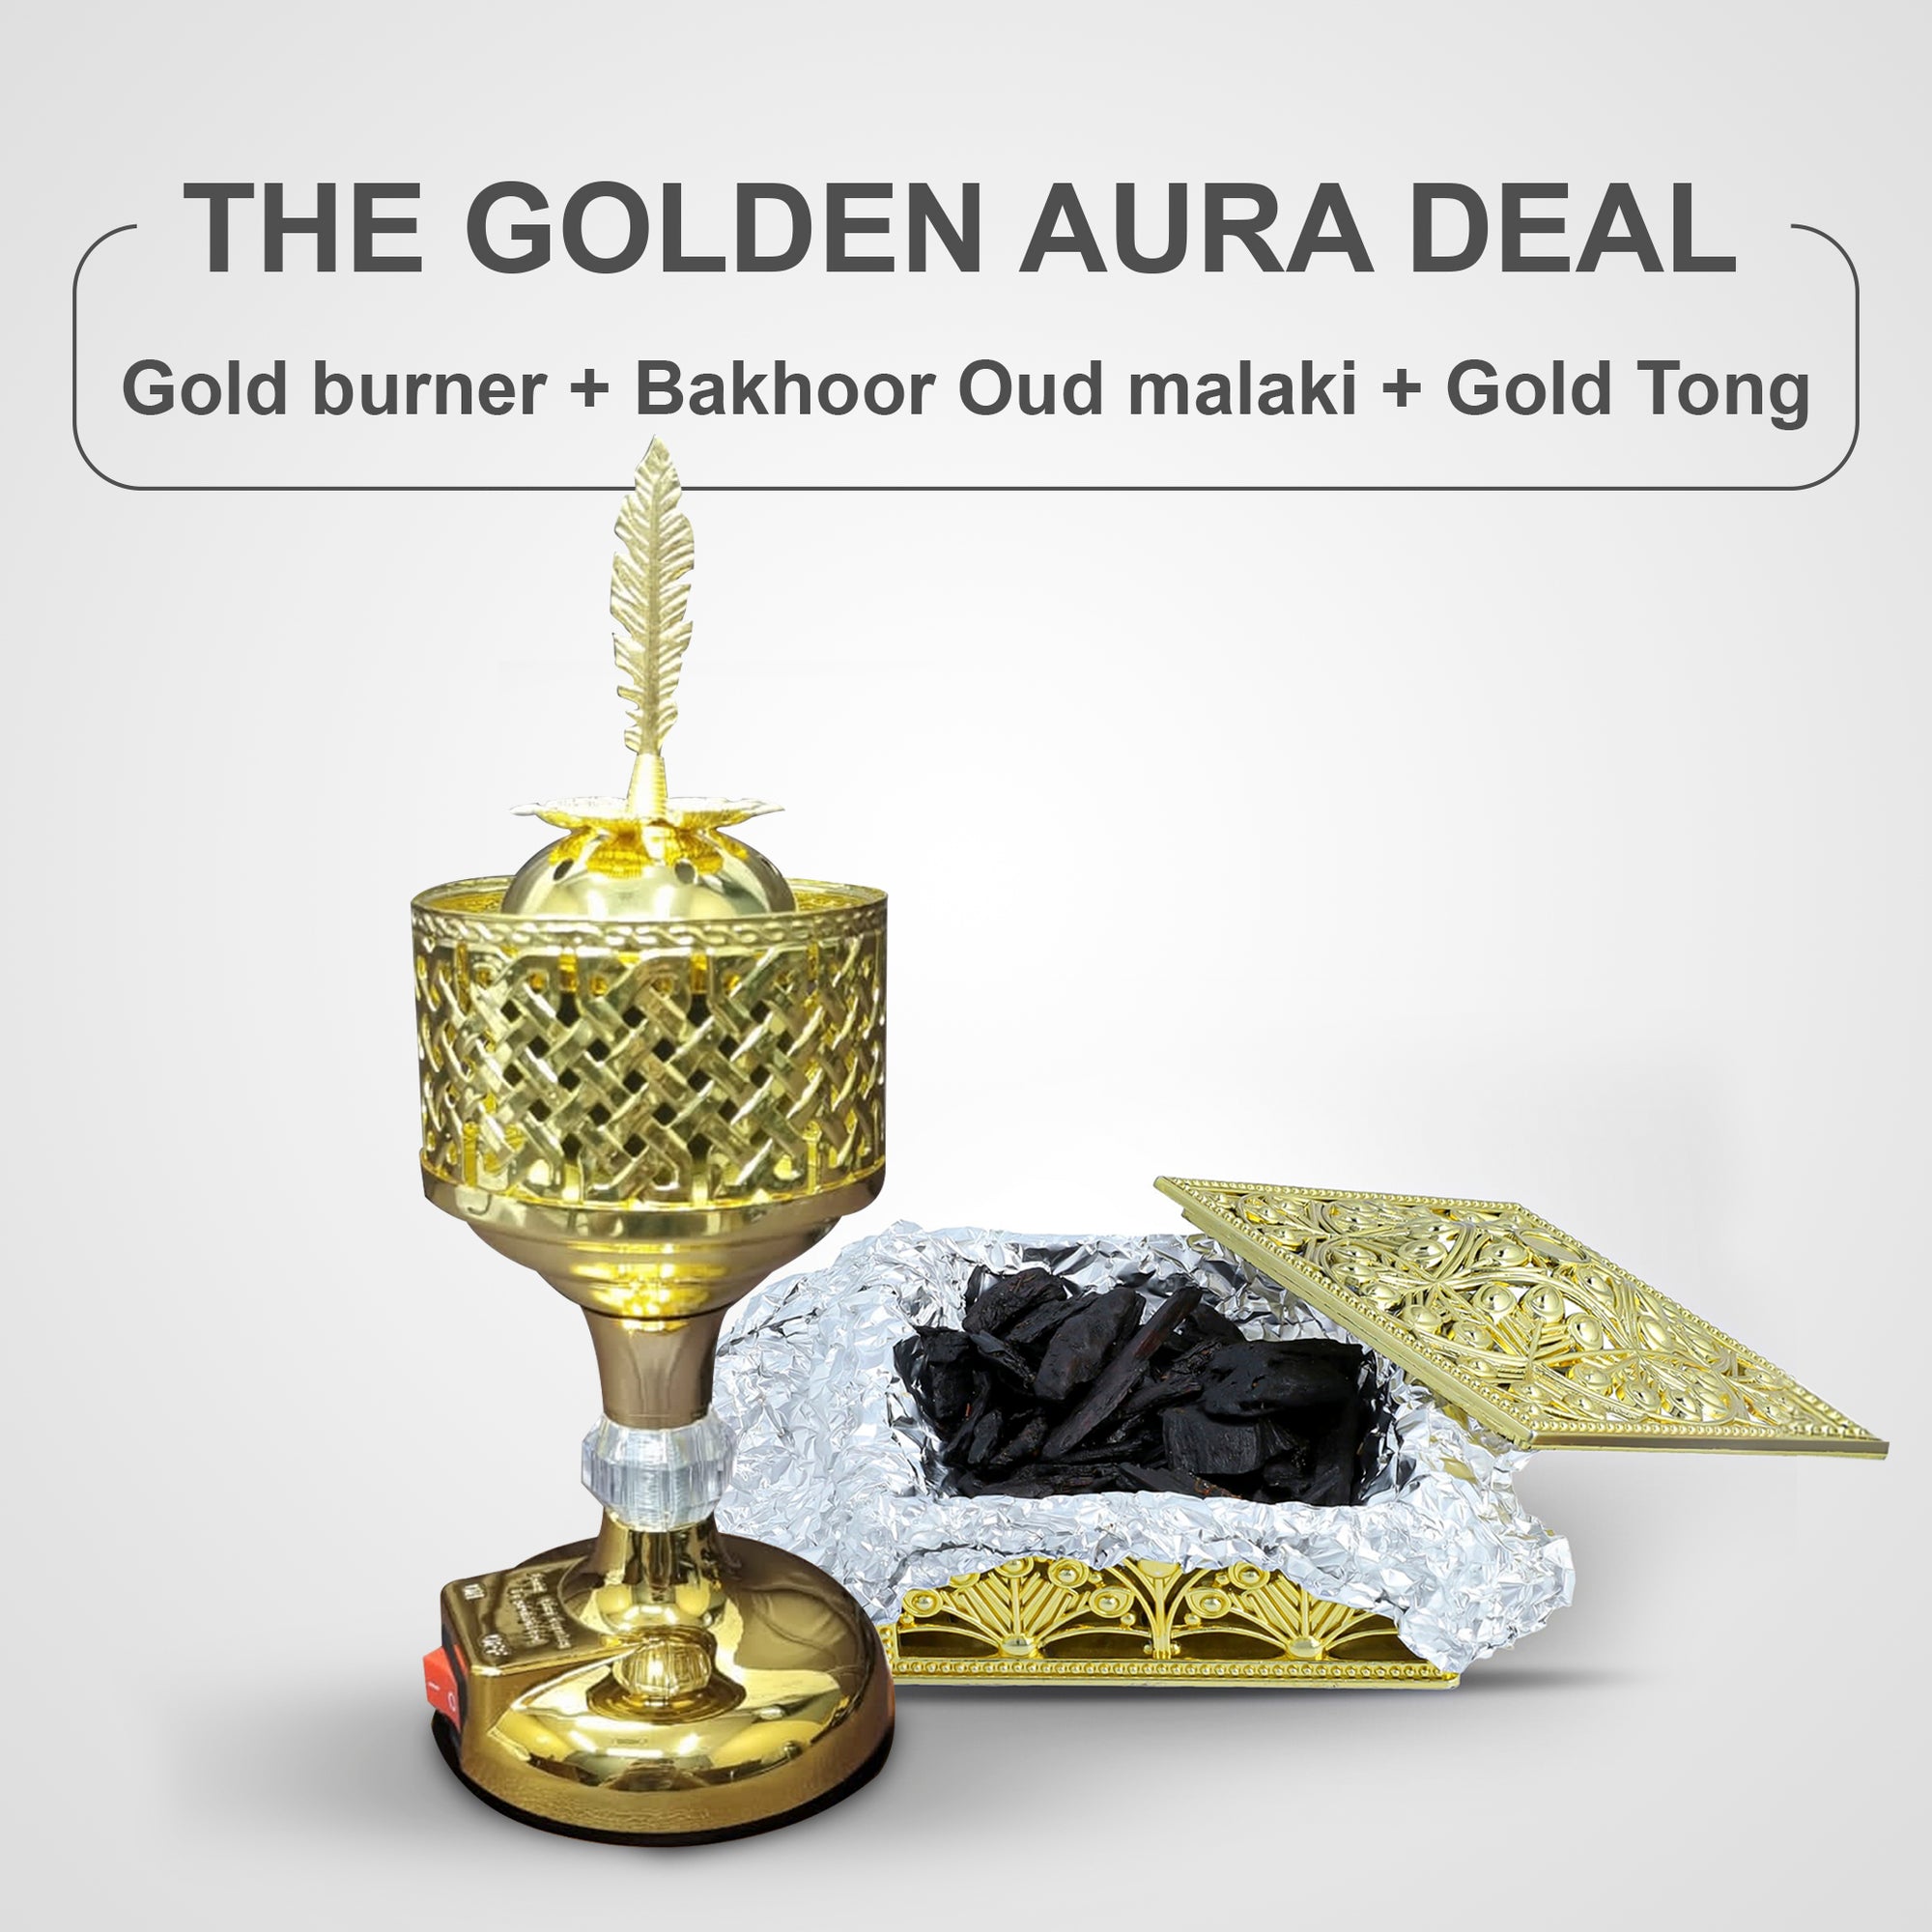 The Golden Aura Deal